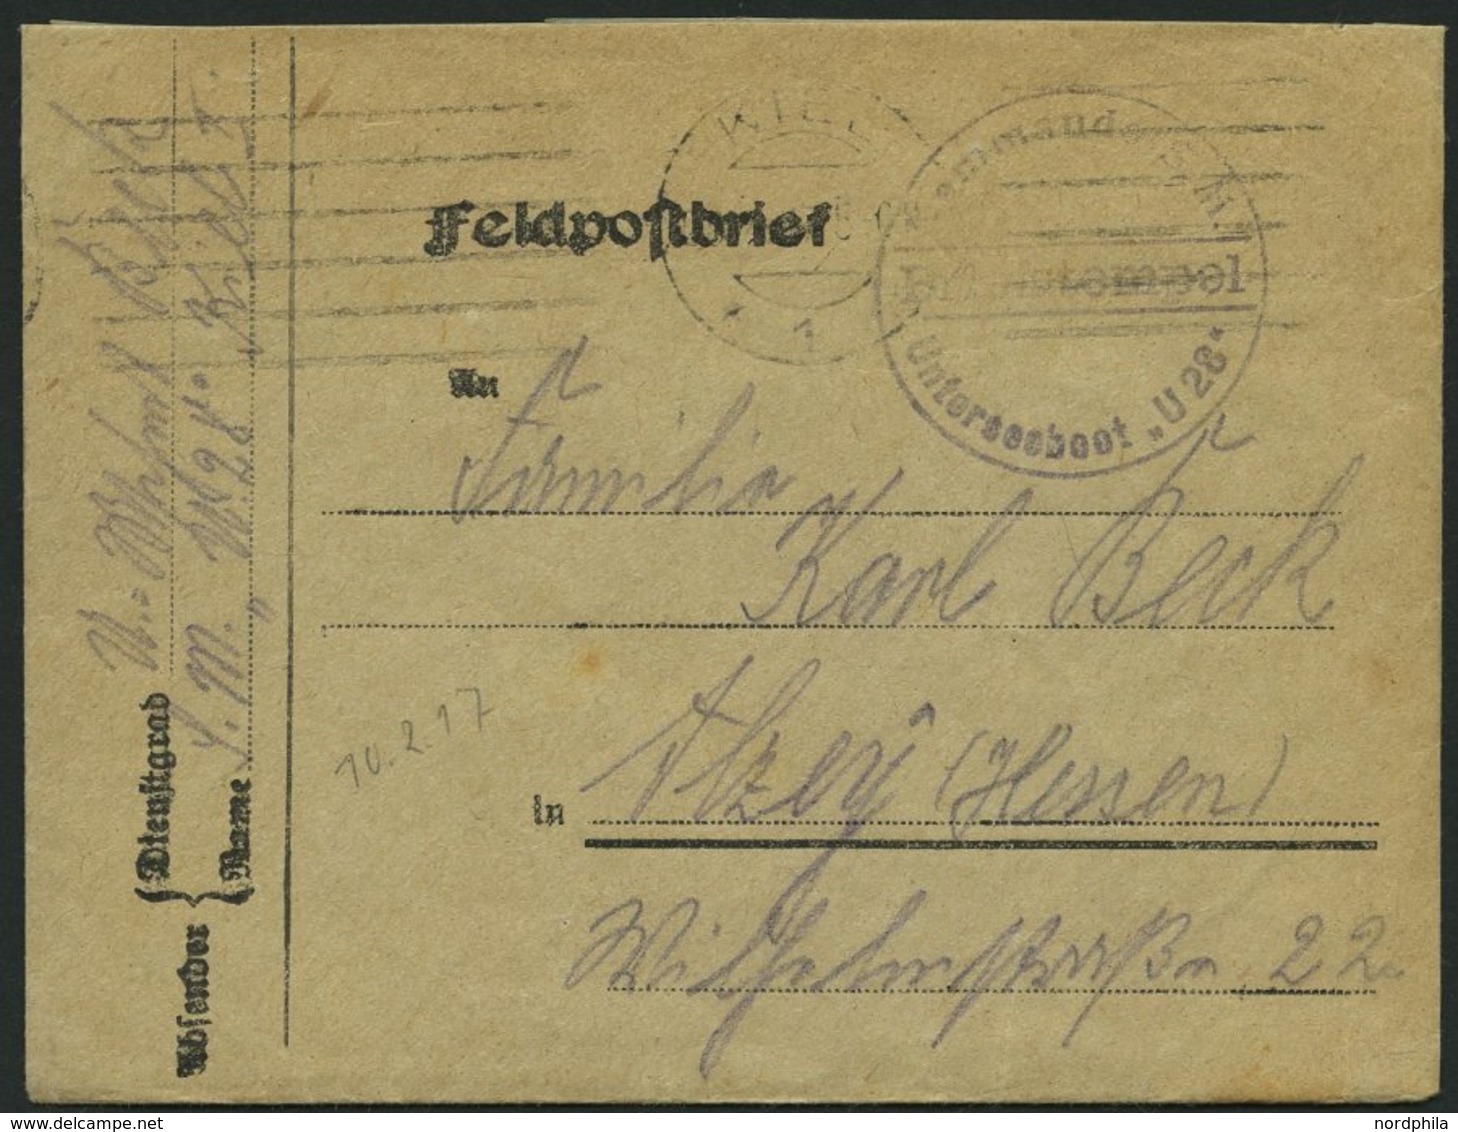 MSP VON 1914 - 1918 (II. Unterseeboots-Halbflottille), 10.2.1917, Violetter Briefstempel, Feldpostbrief Von Bord Des U-B - Schiffahrt